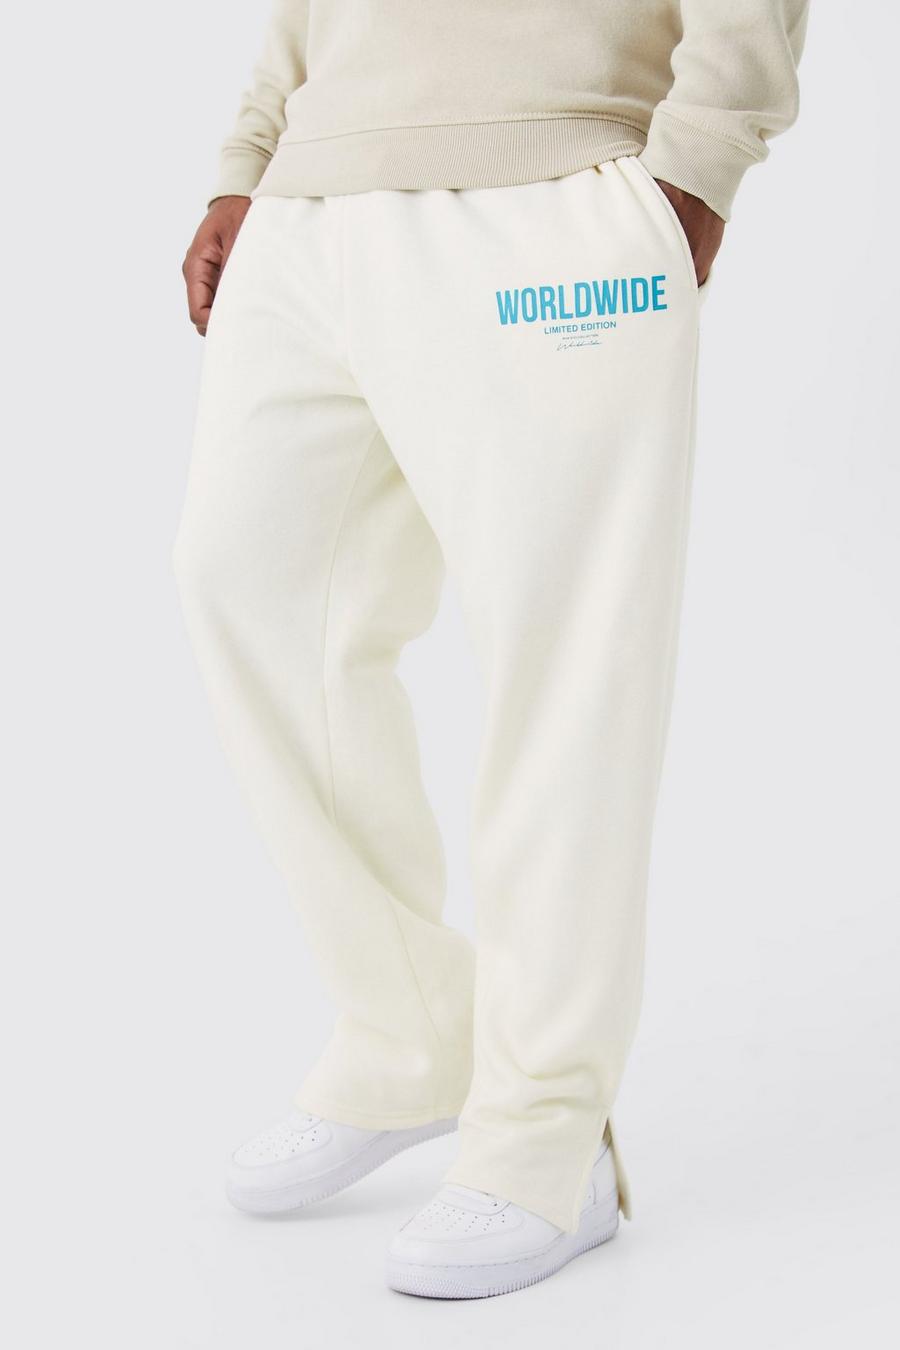 Pantalón deportivo Plus con abertura en el bajo y estampado Worldwide, Ecru white